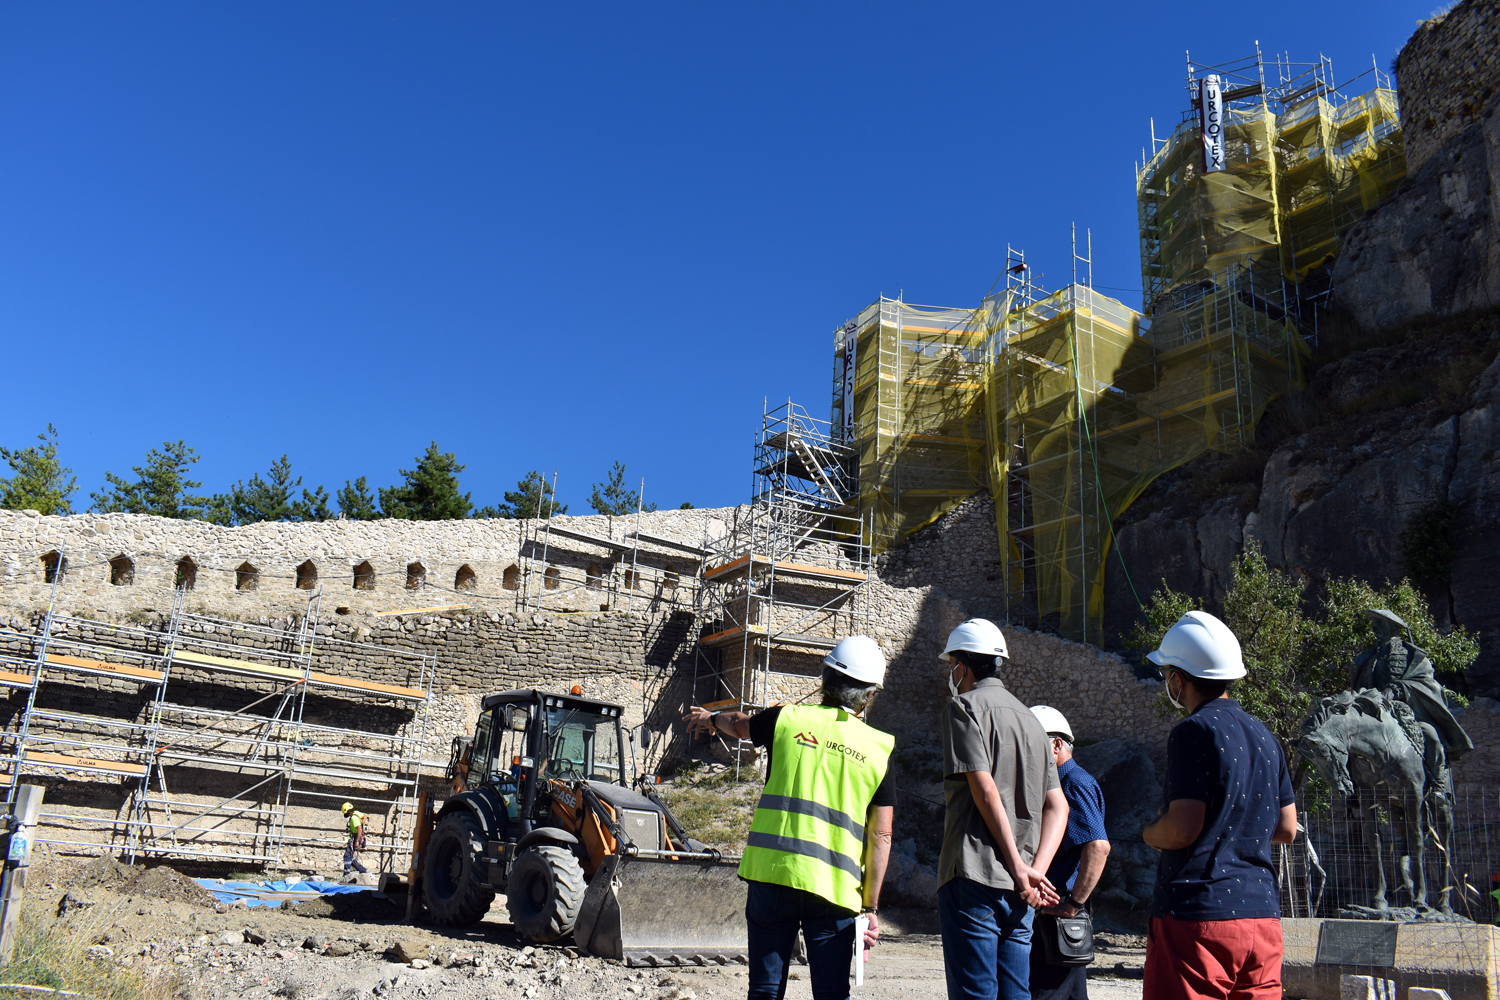 Avança la rehabilitació de les torres de La Pardala i Sant Francesc al Castell de Morella